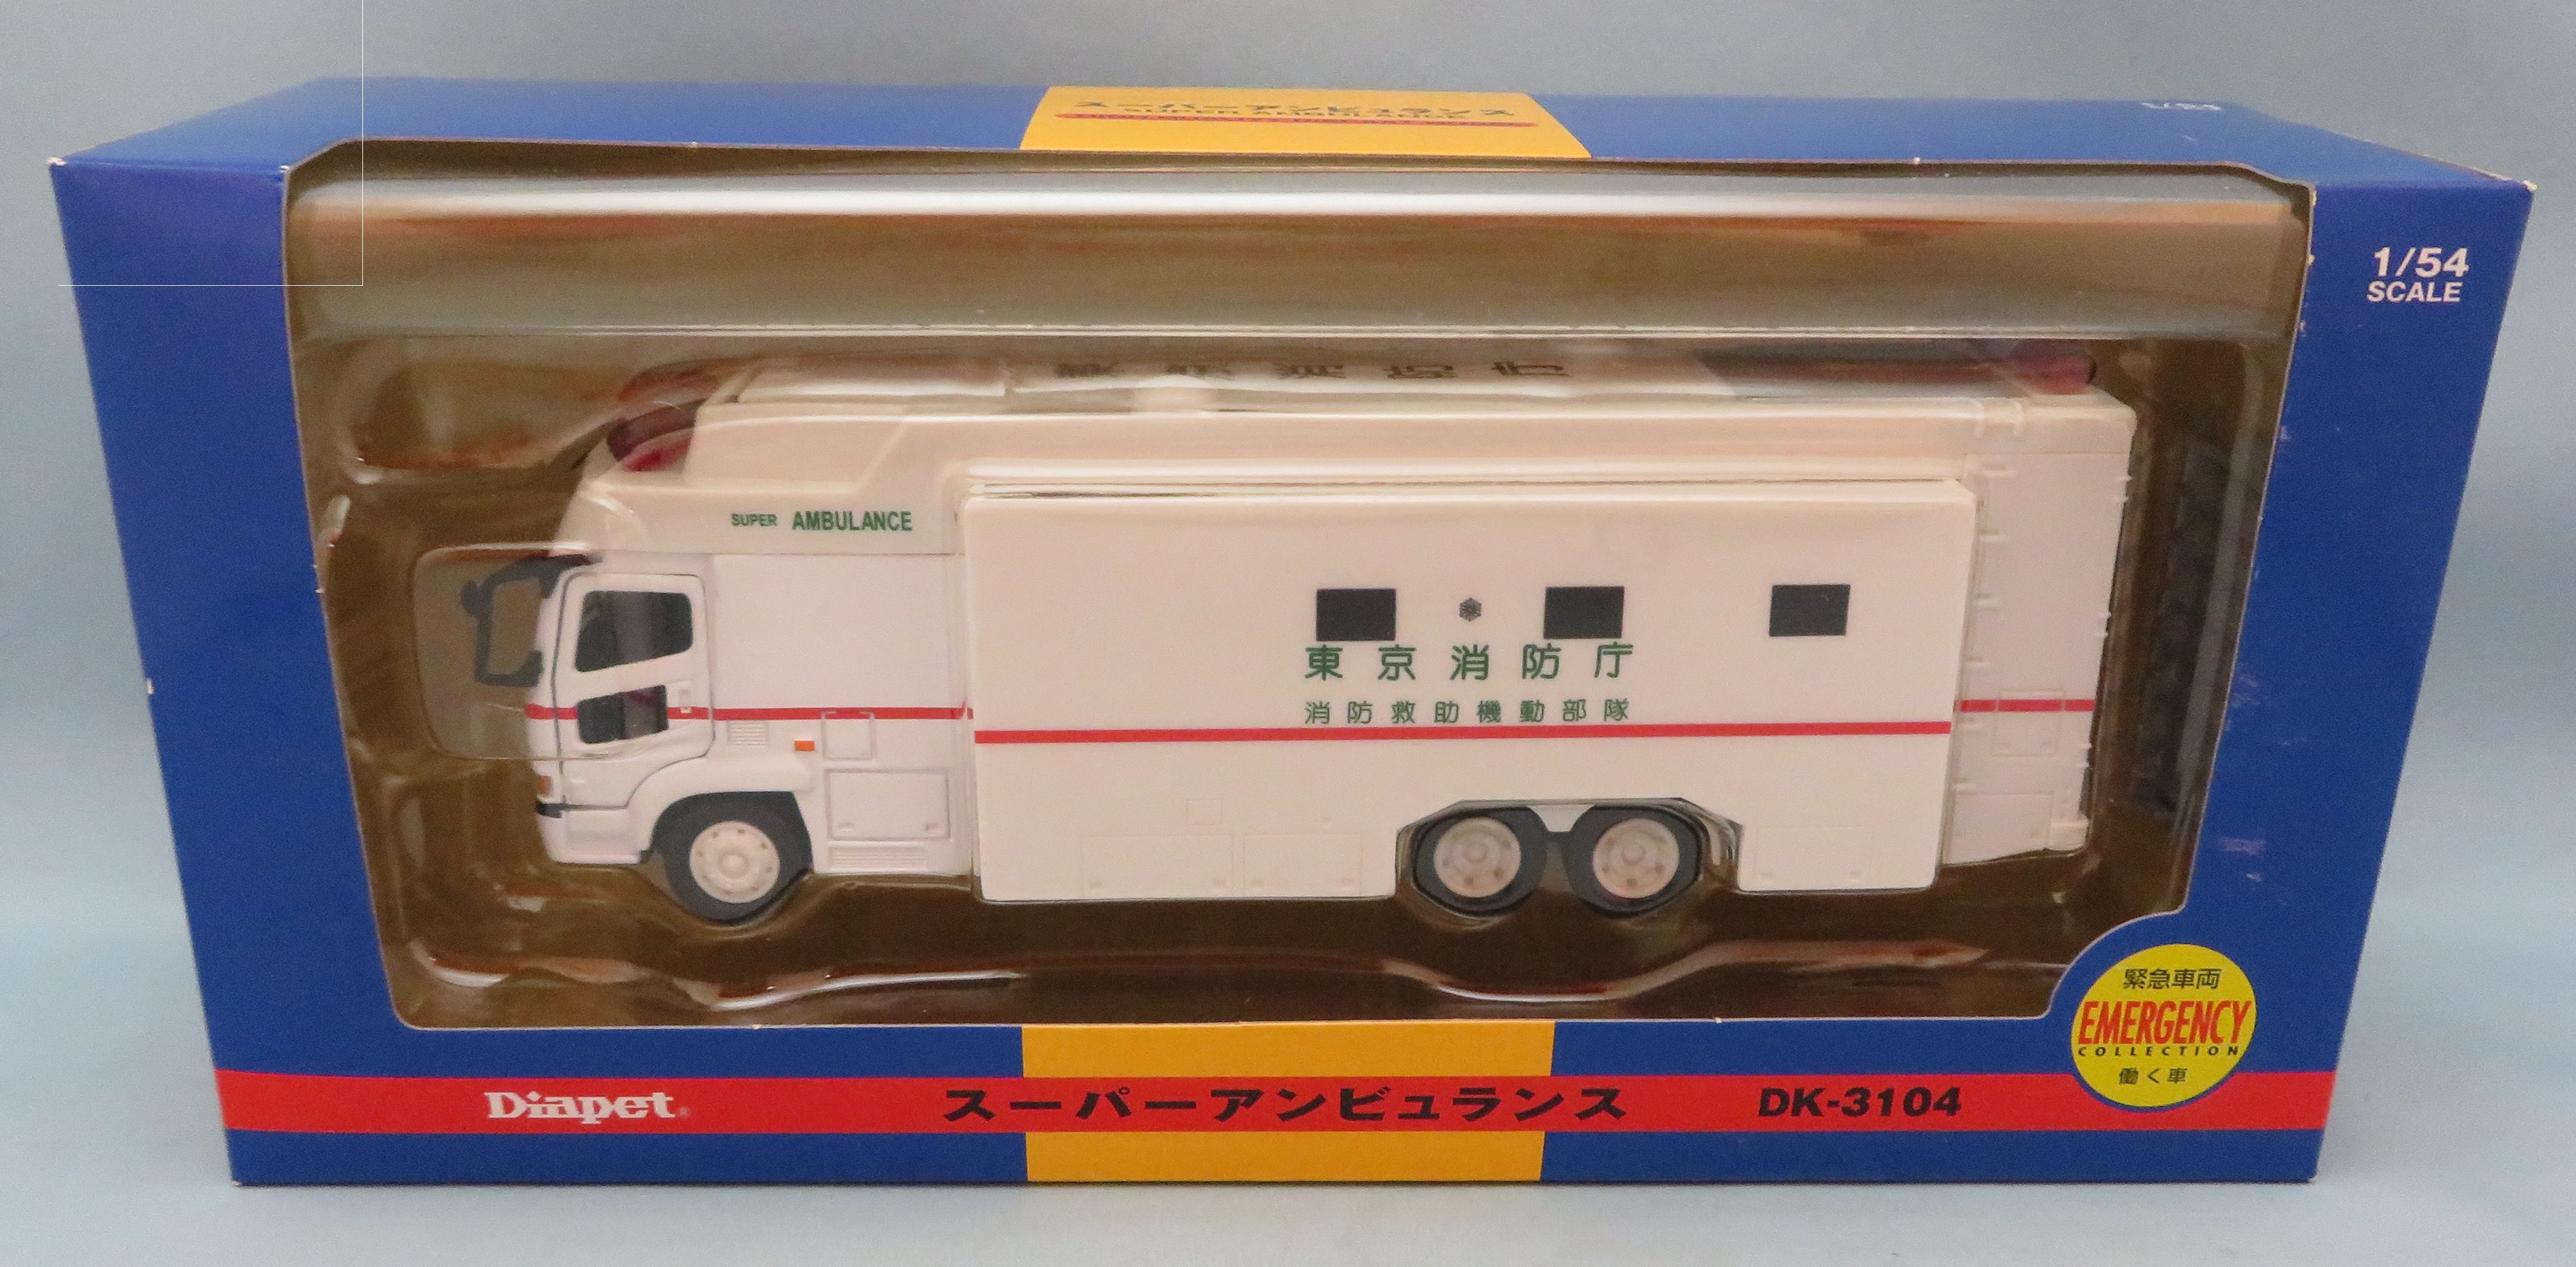 ダイヤペット スーパーアンビュランス 東京消防庁 救急車 緊急車両 